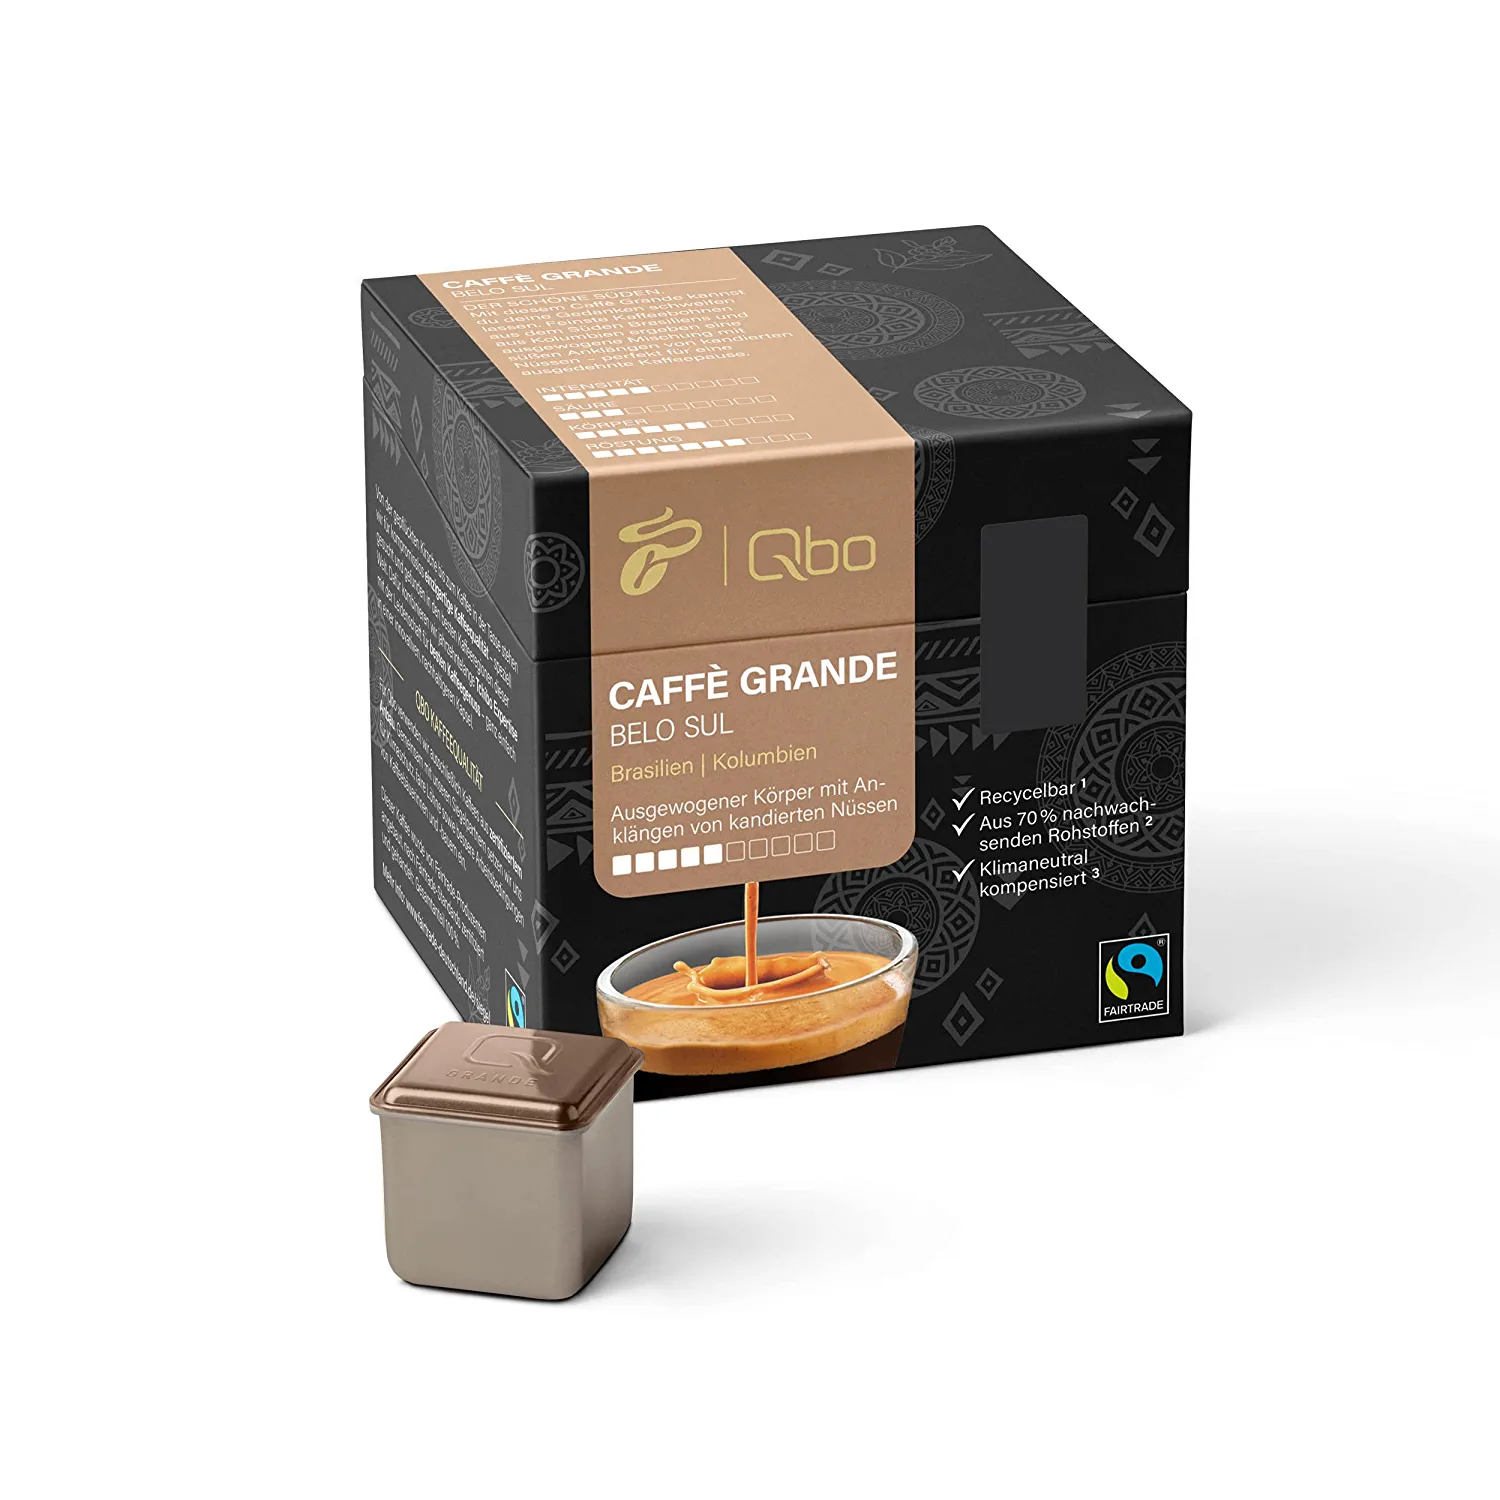 Tchibo Qbo Caffè Grande Belo Sul Premium Kaffeekapseln, 27 Stück (Caffè Grande, Intensität 5/10, ausgewogen und nussig), nachhaltig, aus 70% nachwachsenden Rohstoffen & klimaneutral kompensiert